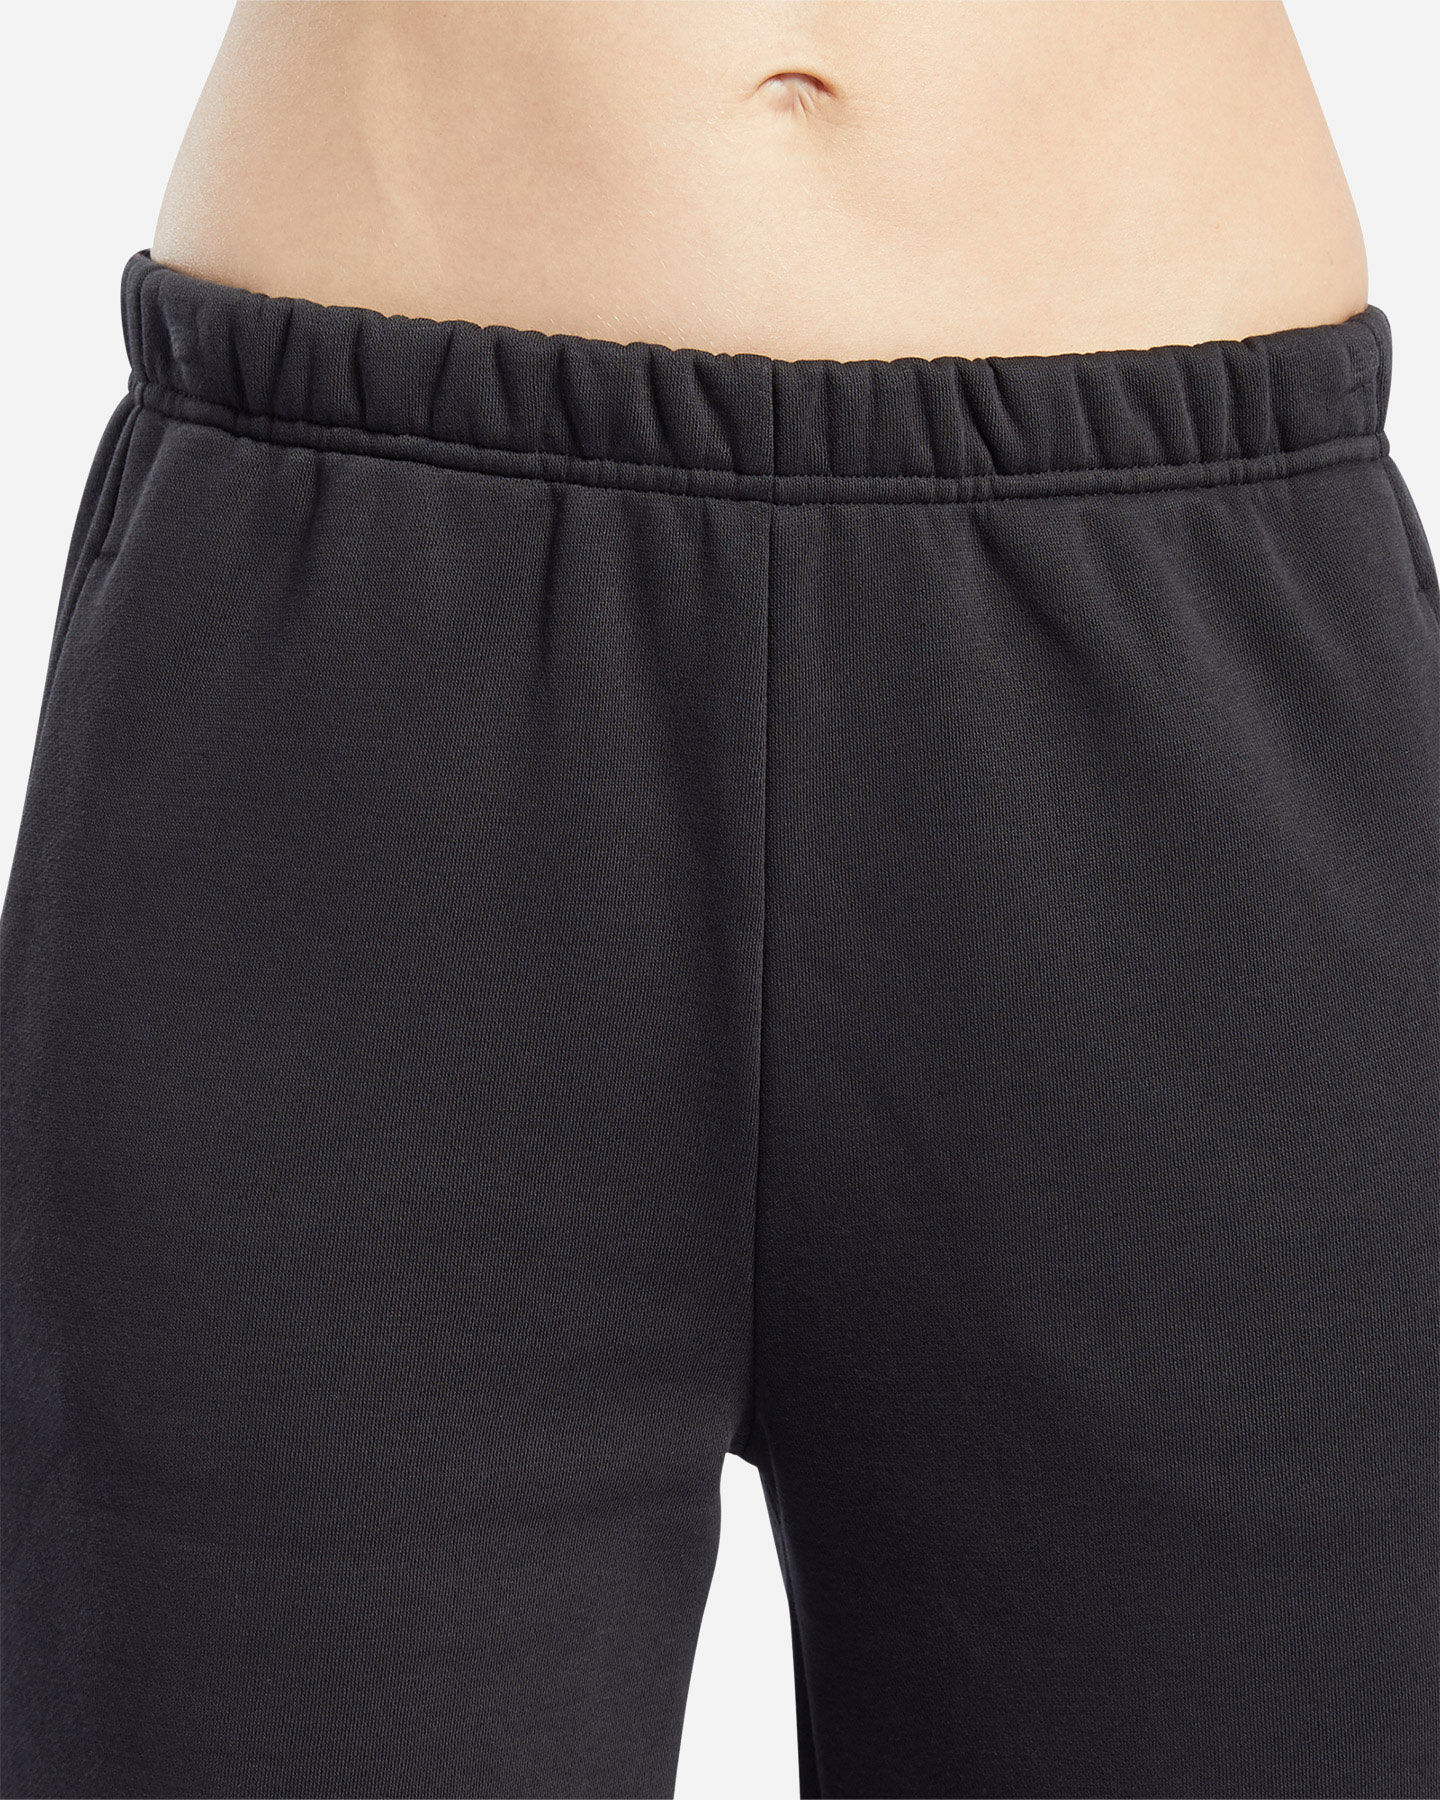  Pantalone training REEBOK JOGGER W S5214640|UNI|XS scatto 4